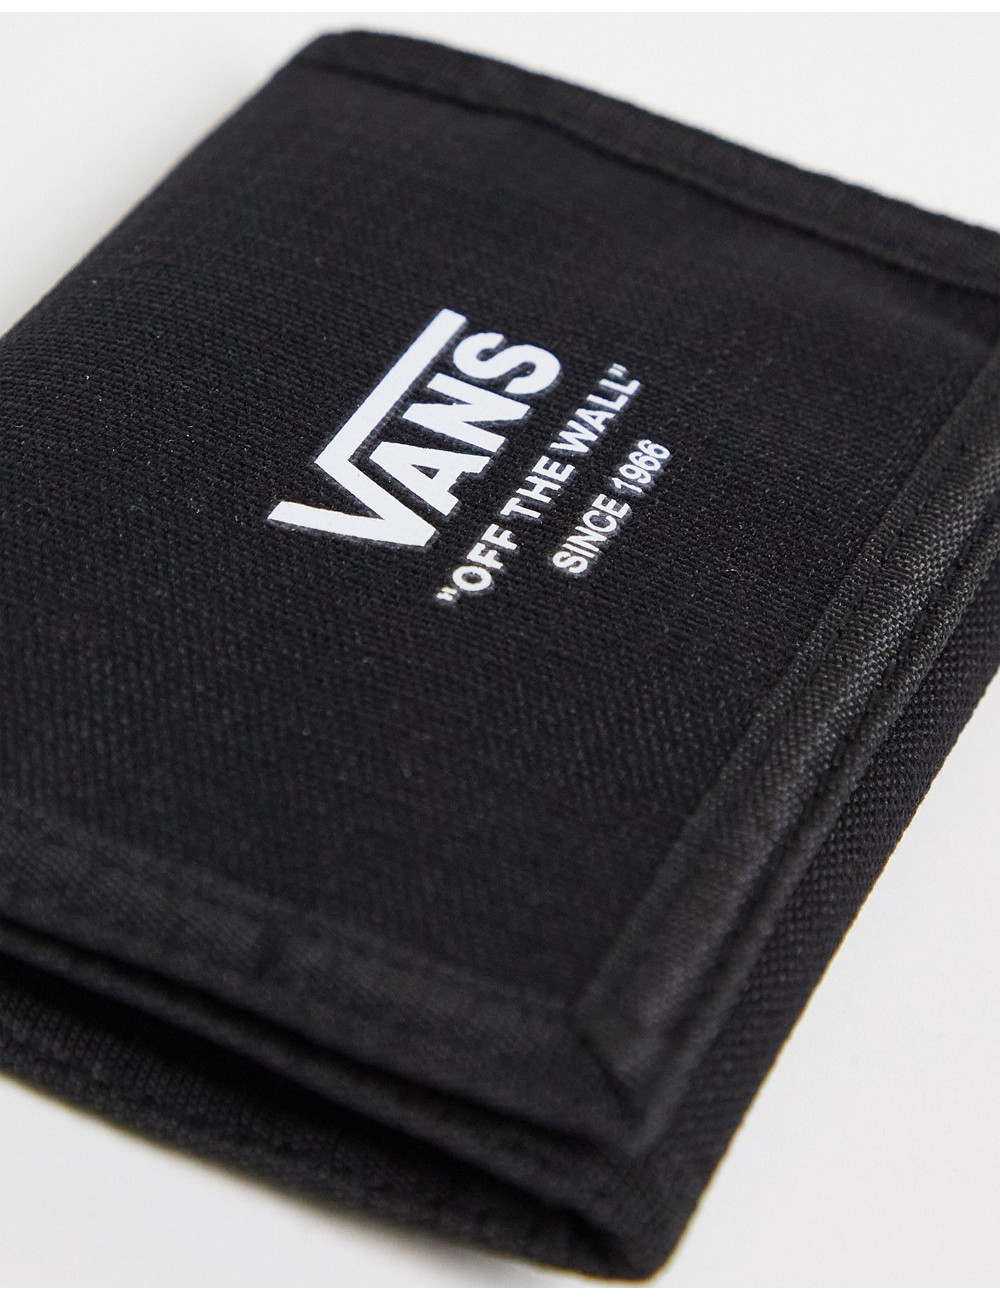 Vans Gaines wallet in black